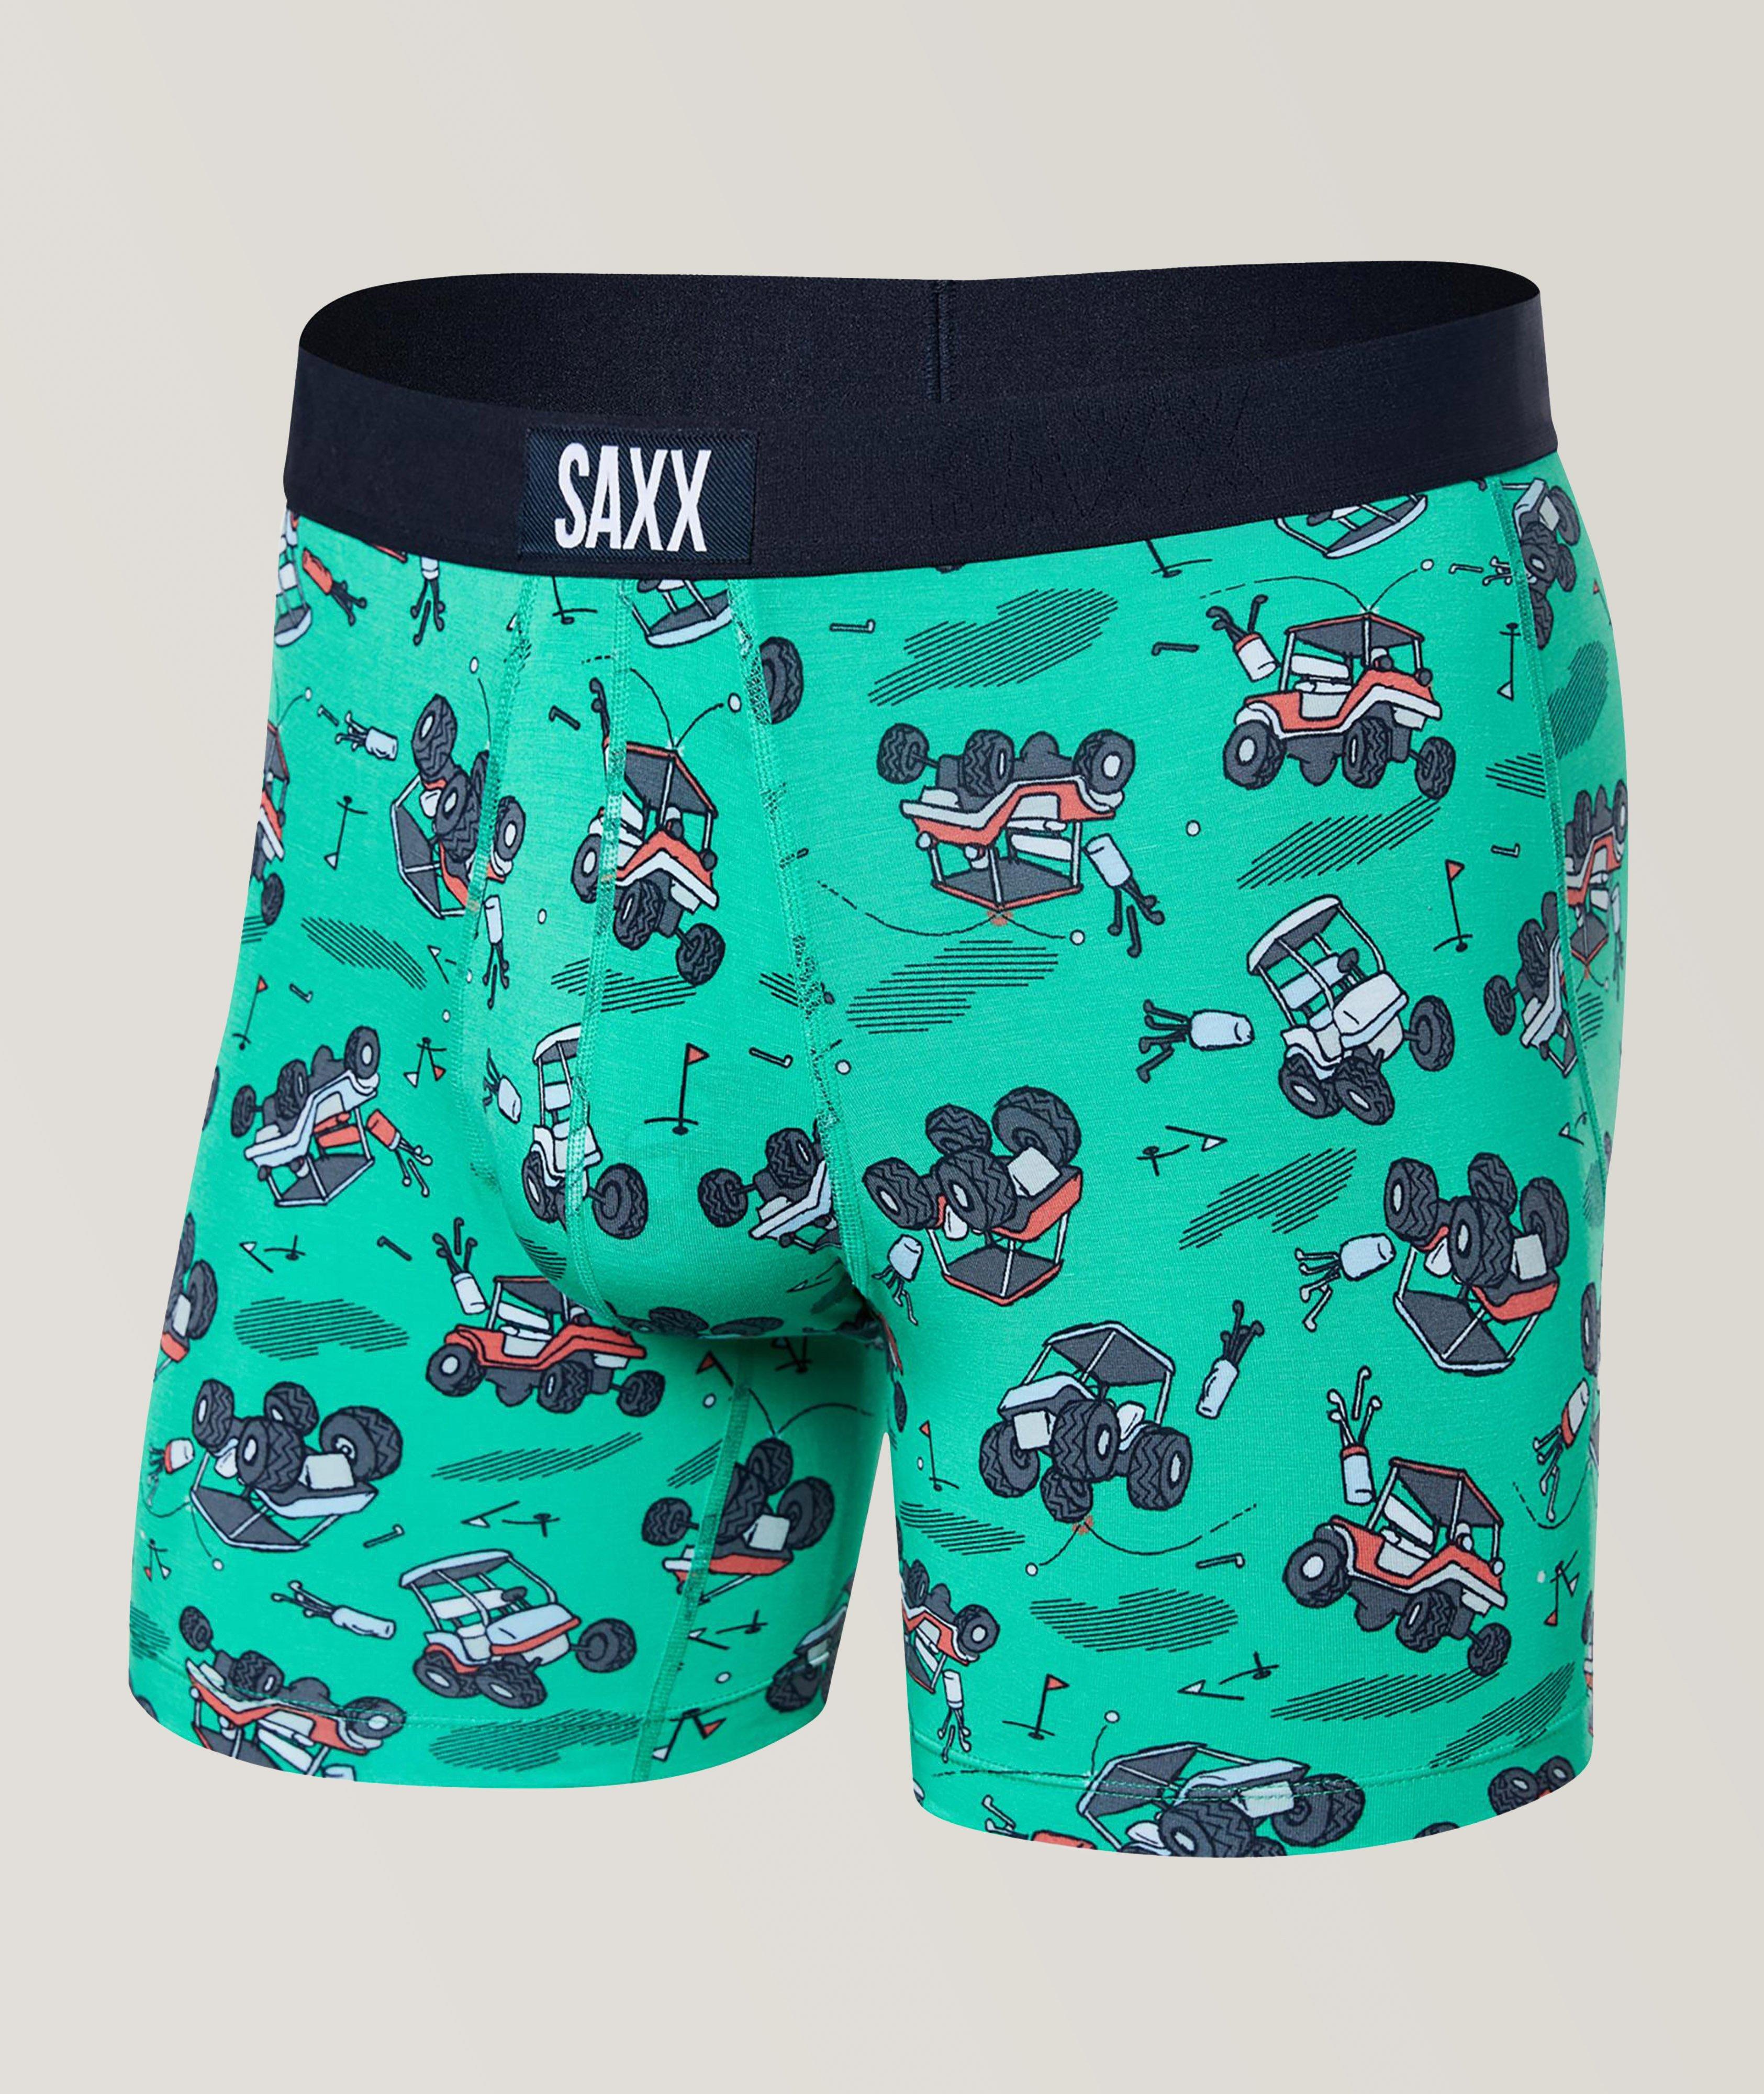 SAXX Golf Ultra Boxer Briefs, Underwear